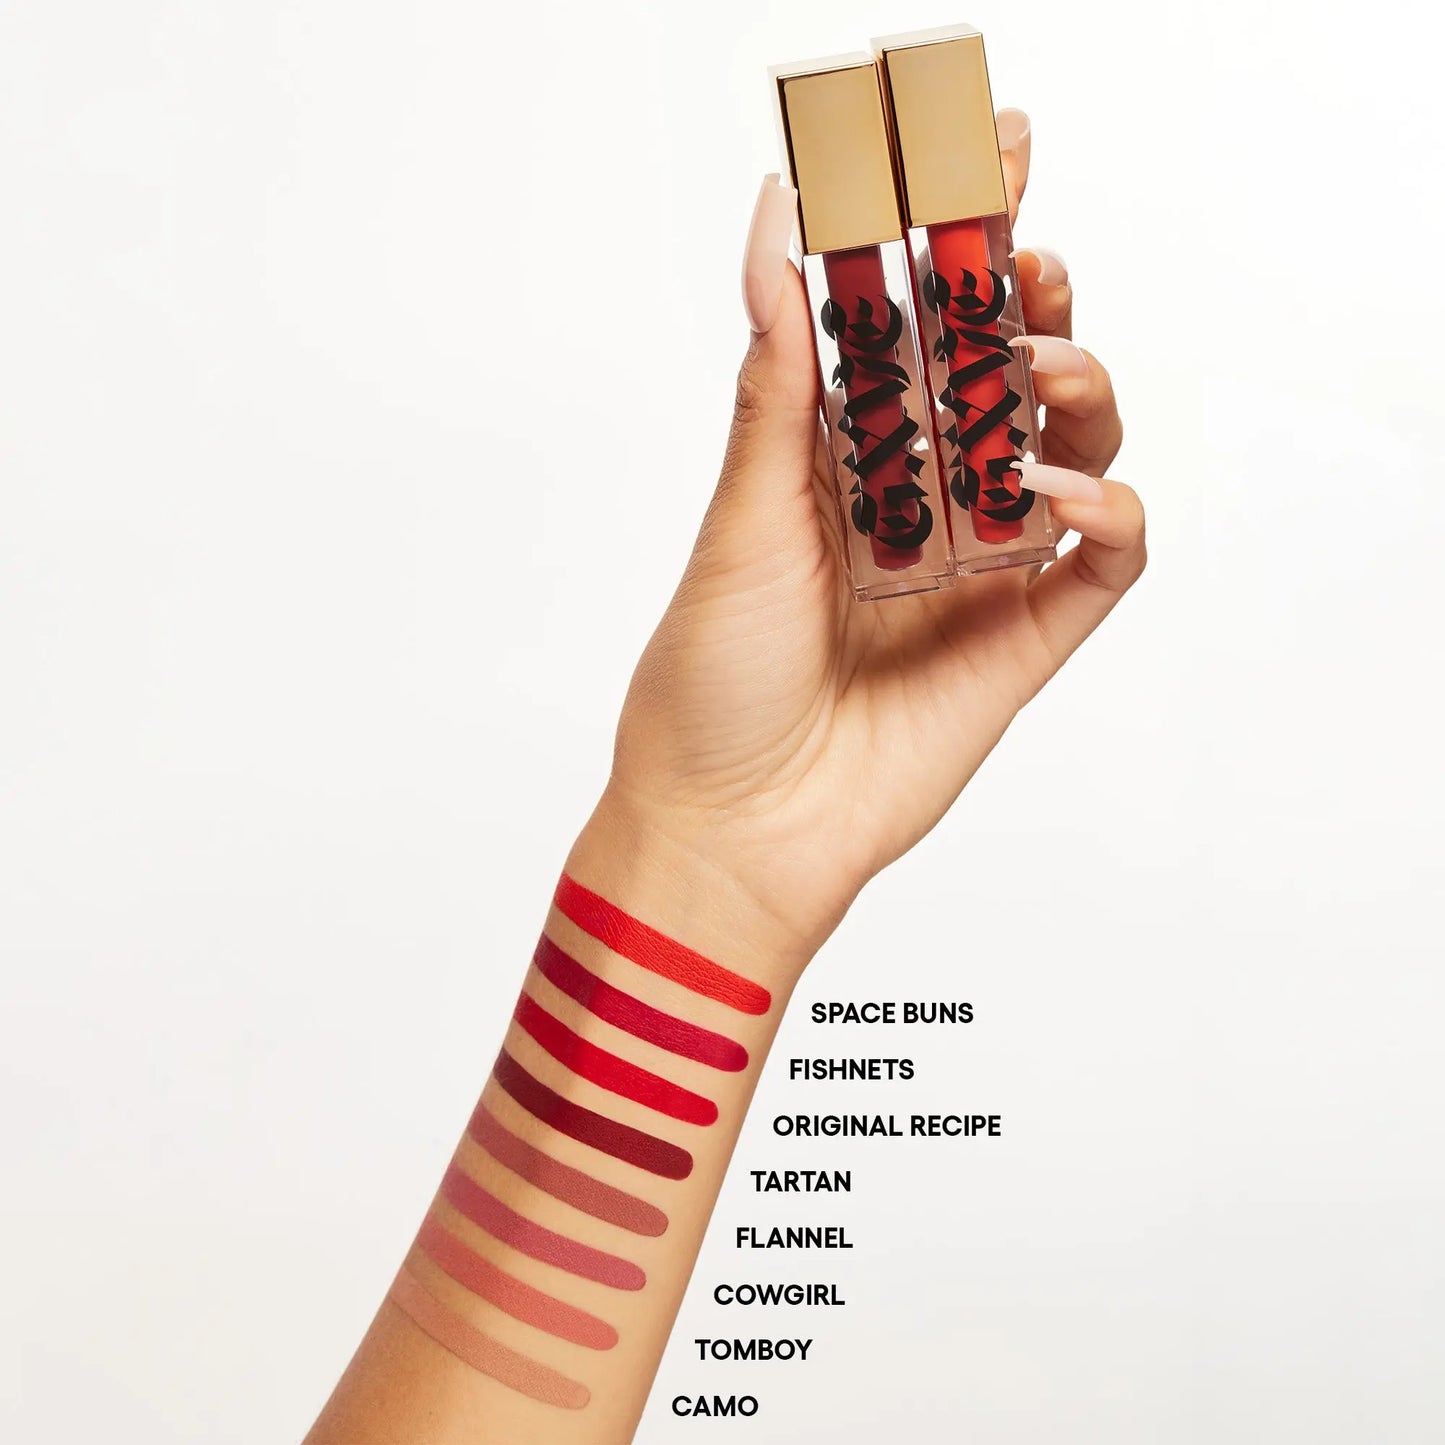 GXVE Tartan - High-Performance Matte Liquid Lipstick